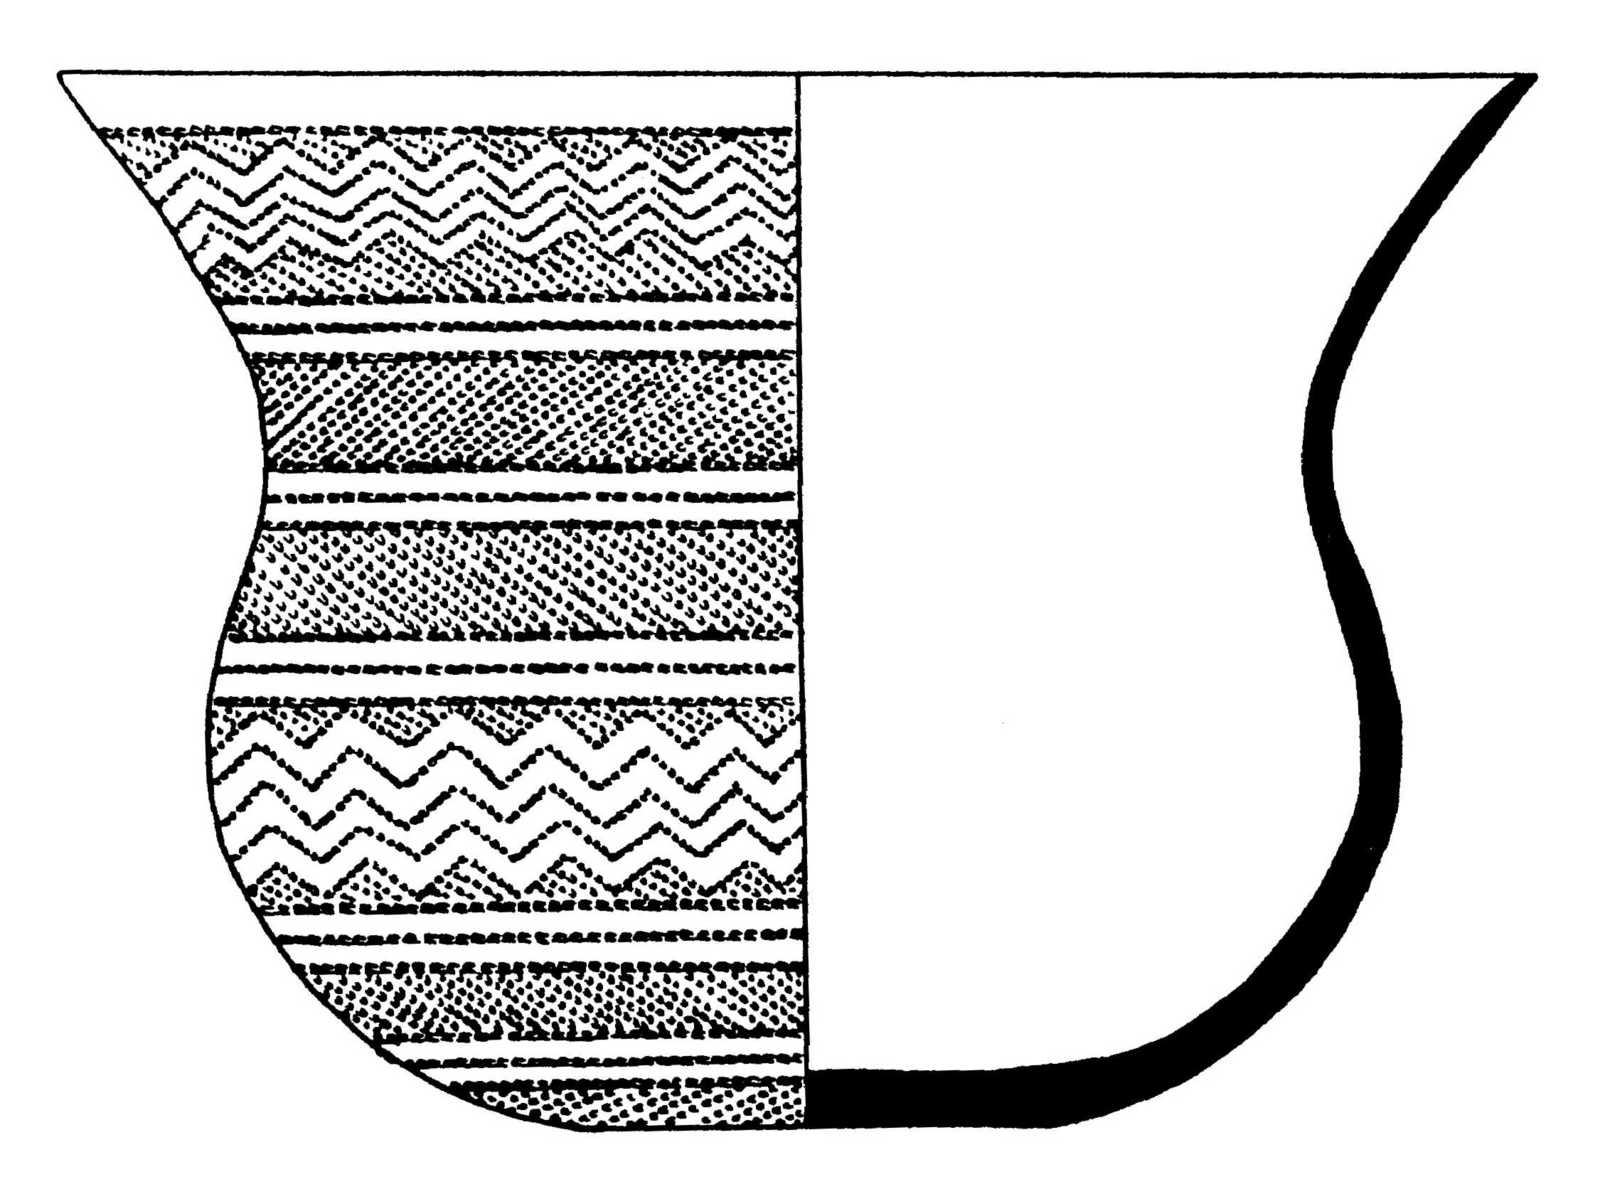 Kresba nádoby kultury zvoncovitých pohárů z Žádovic